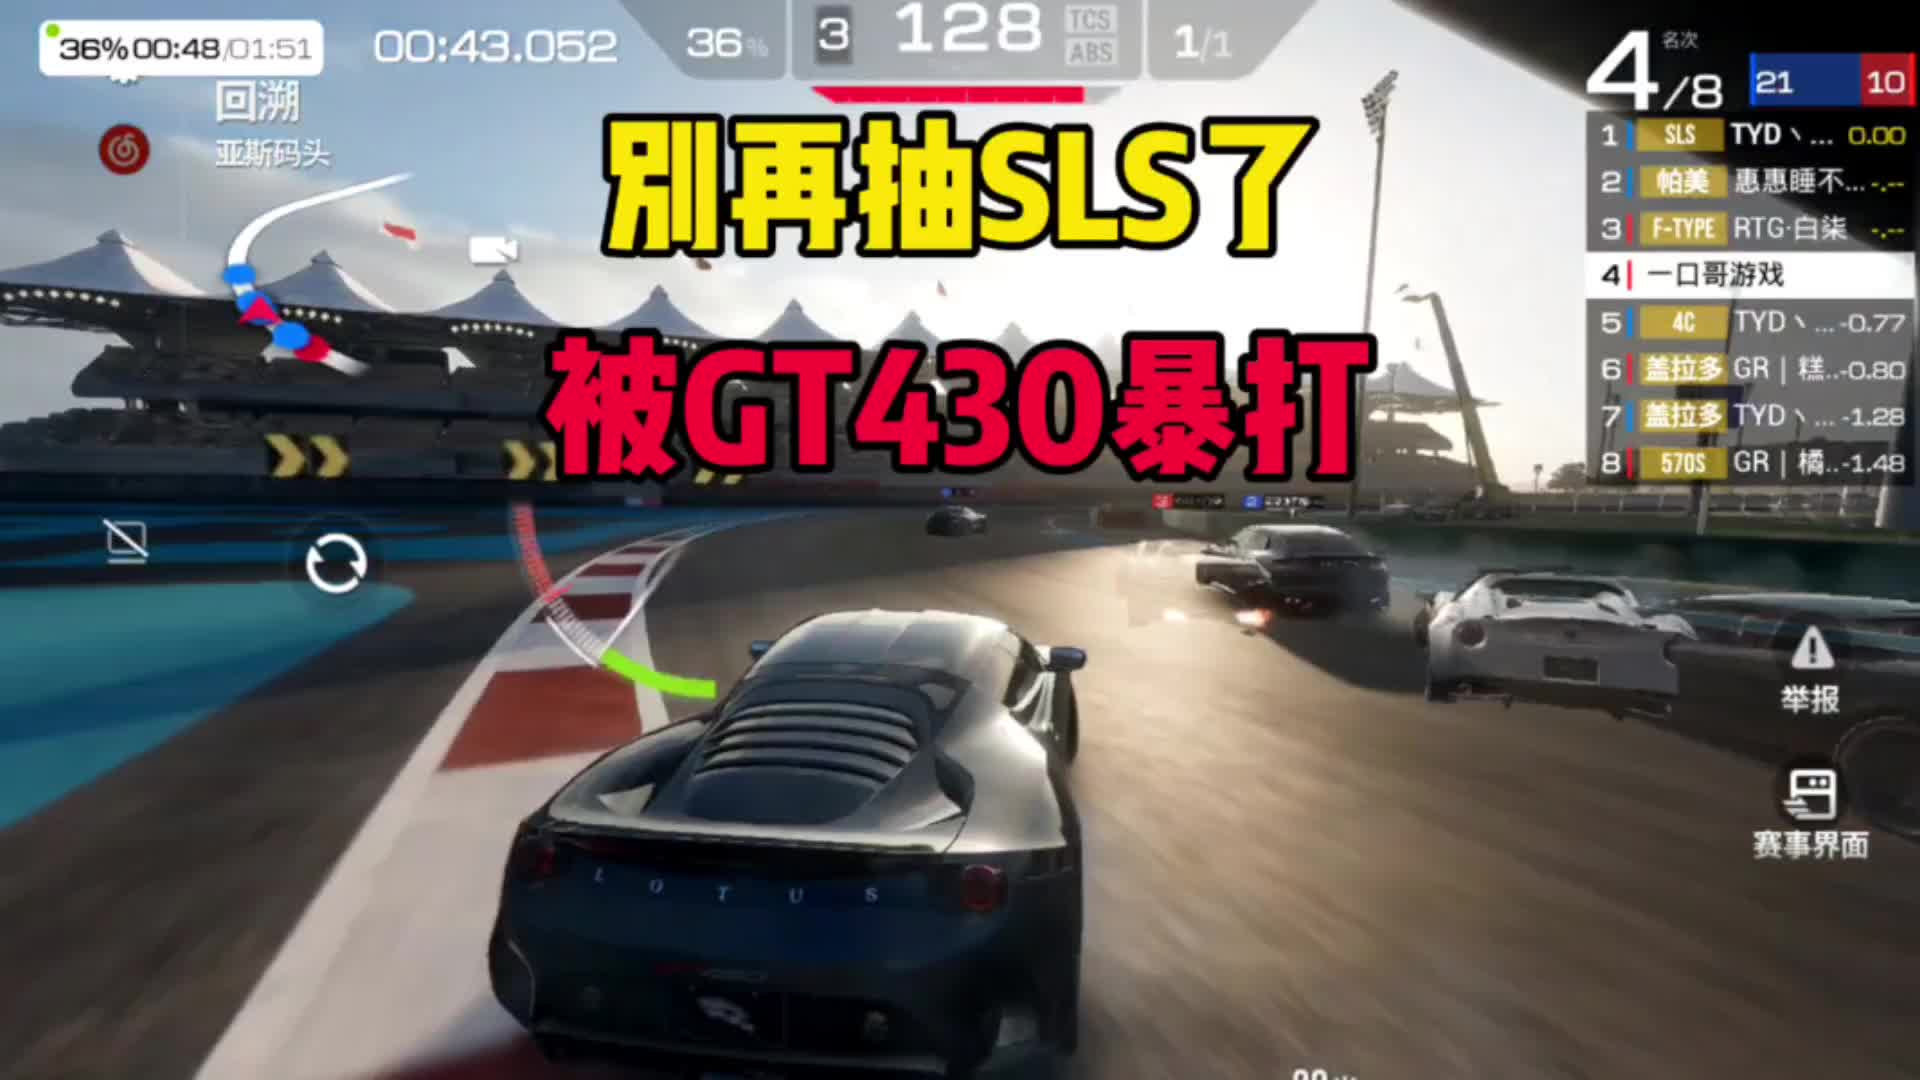 巅峰极速：别再抽梅赛德斯SLS了，被莲花GT430暴打！